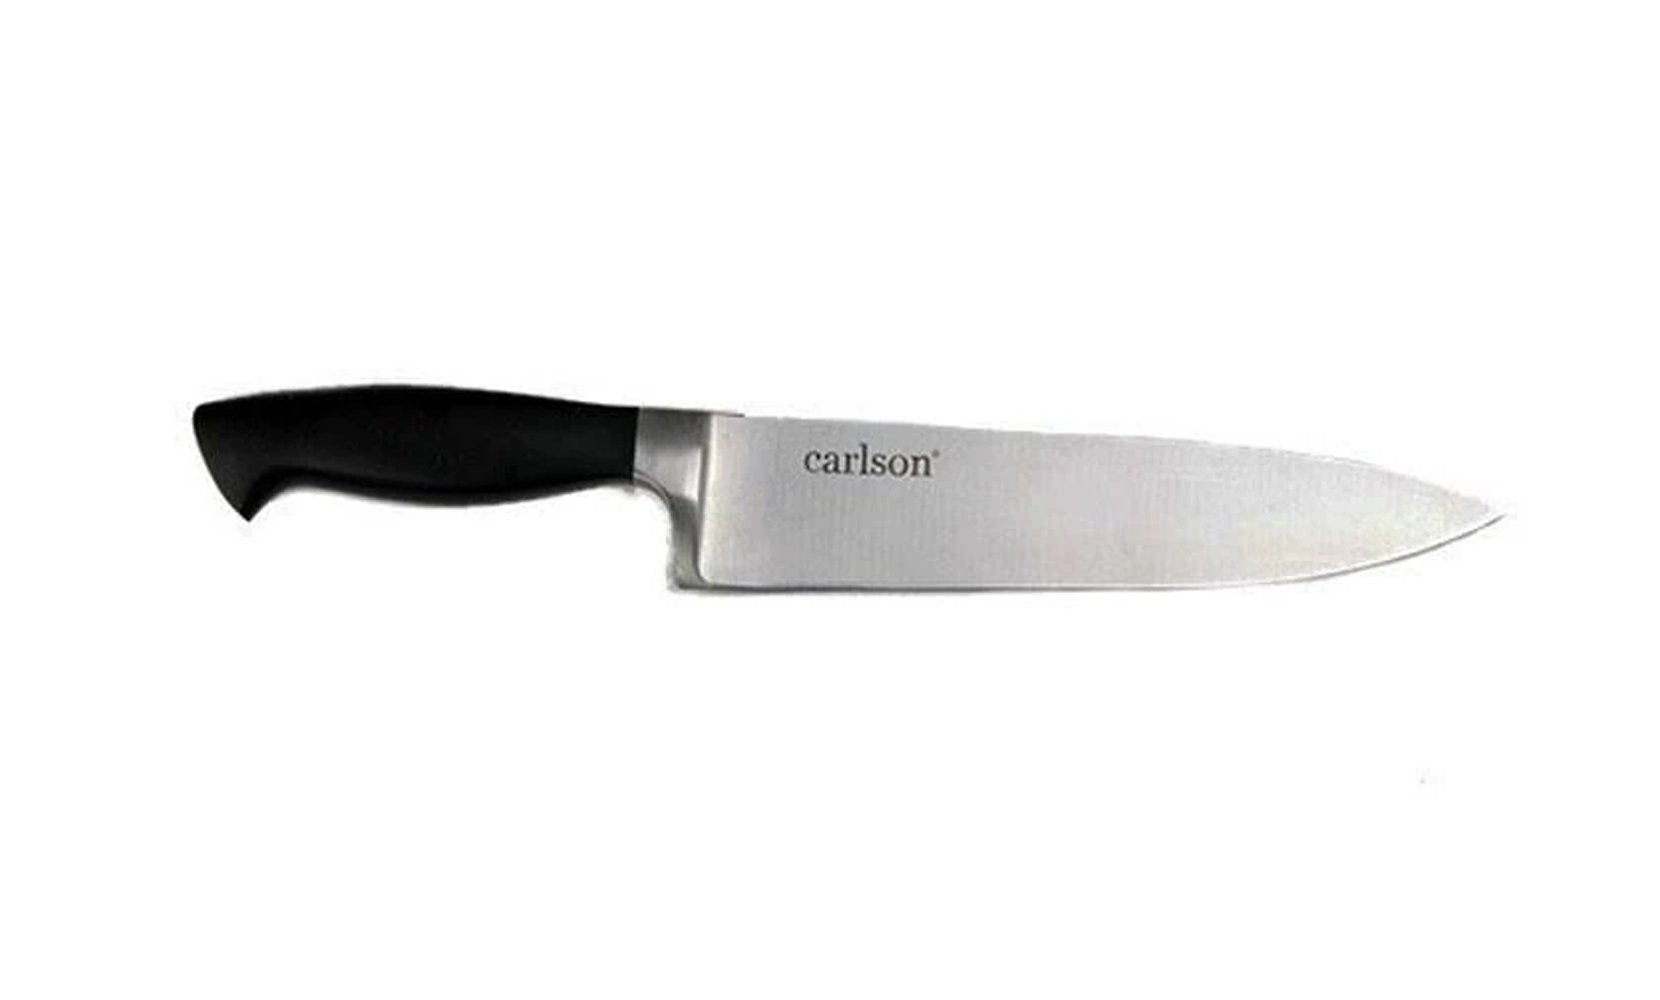 6-Piece Set Carlson-Knive Set